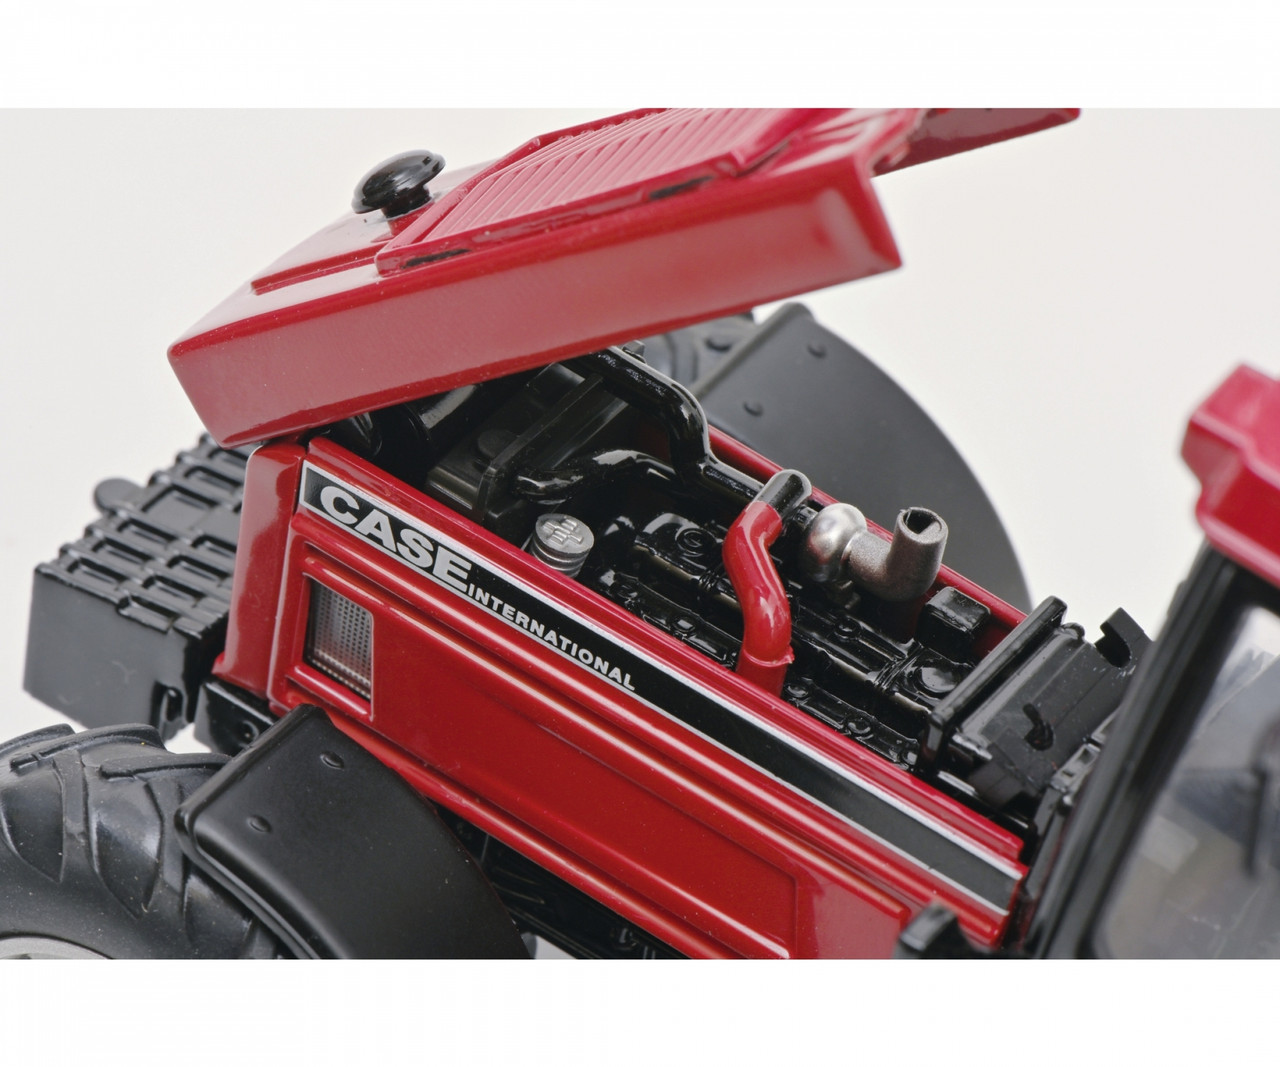 1/32 Schuco Case International 1255 XL Tractor (Red) Diecast Model